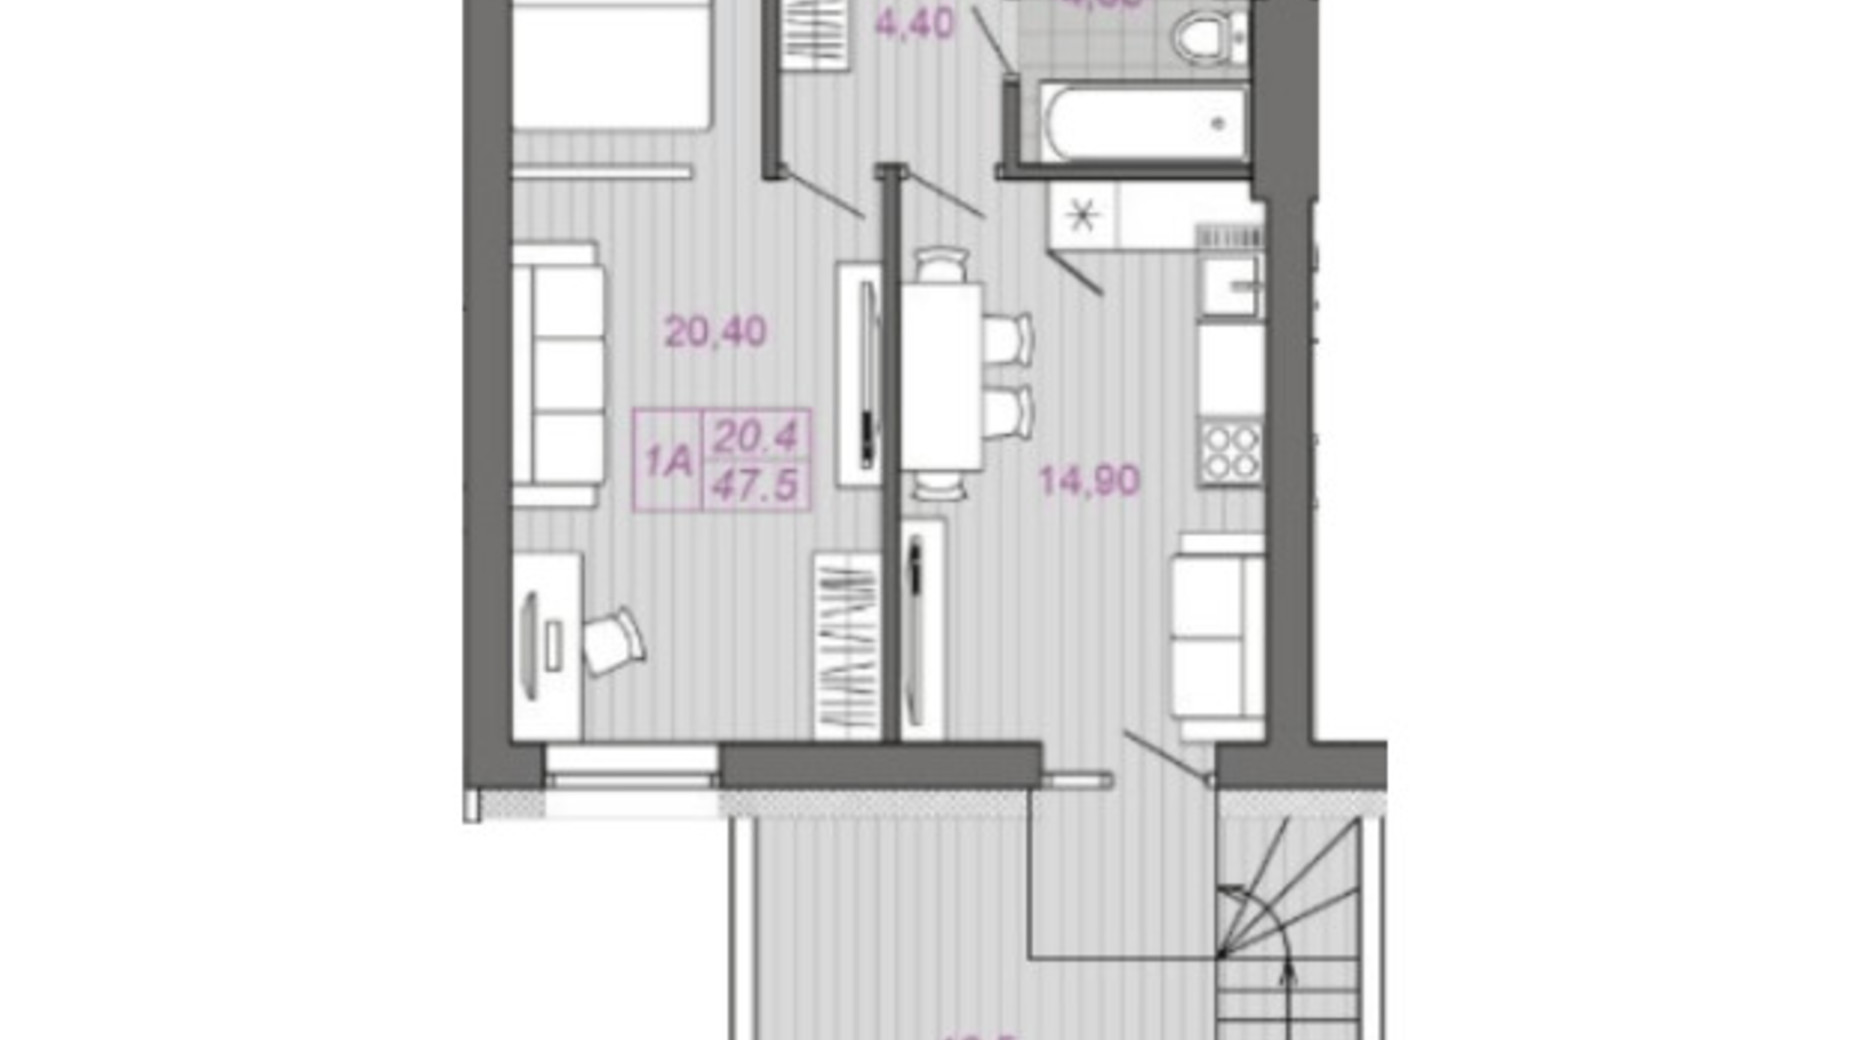 Планировка 1-комнатной квартиры в ЖК Семейная Крепость. Гордость 47.5 м², фото 627652